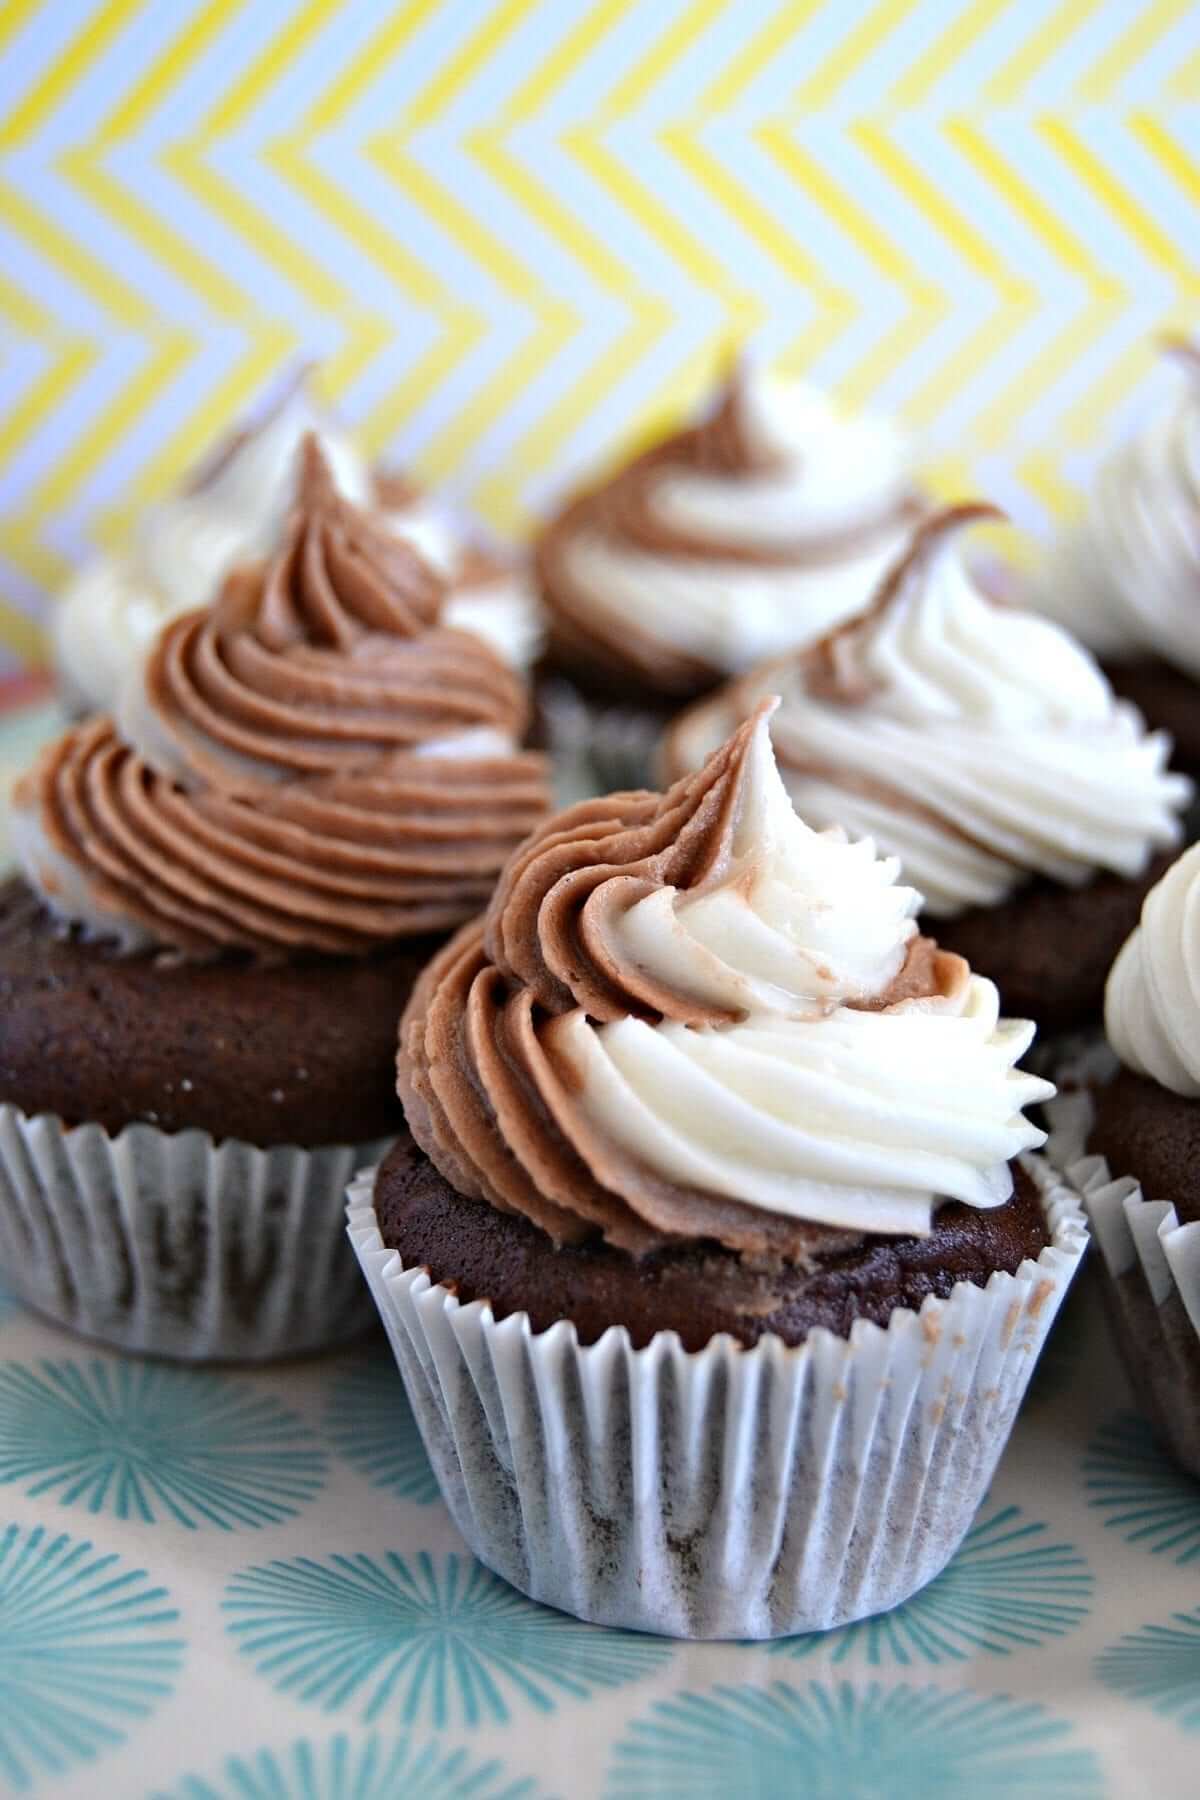 https://www.loulougirls.com/wp-content/uploads/2016/06/Chocolate-Vanilla-Swirl-mini-cupcakes-1200x1800.jpg